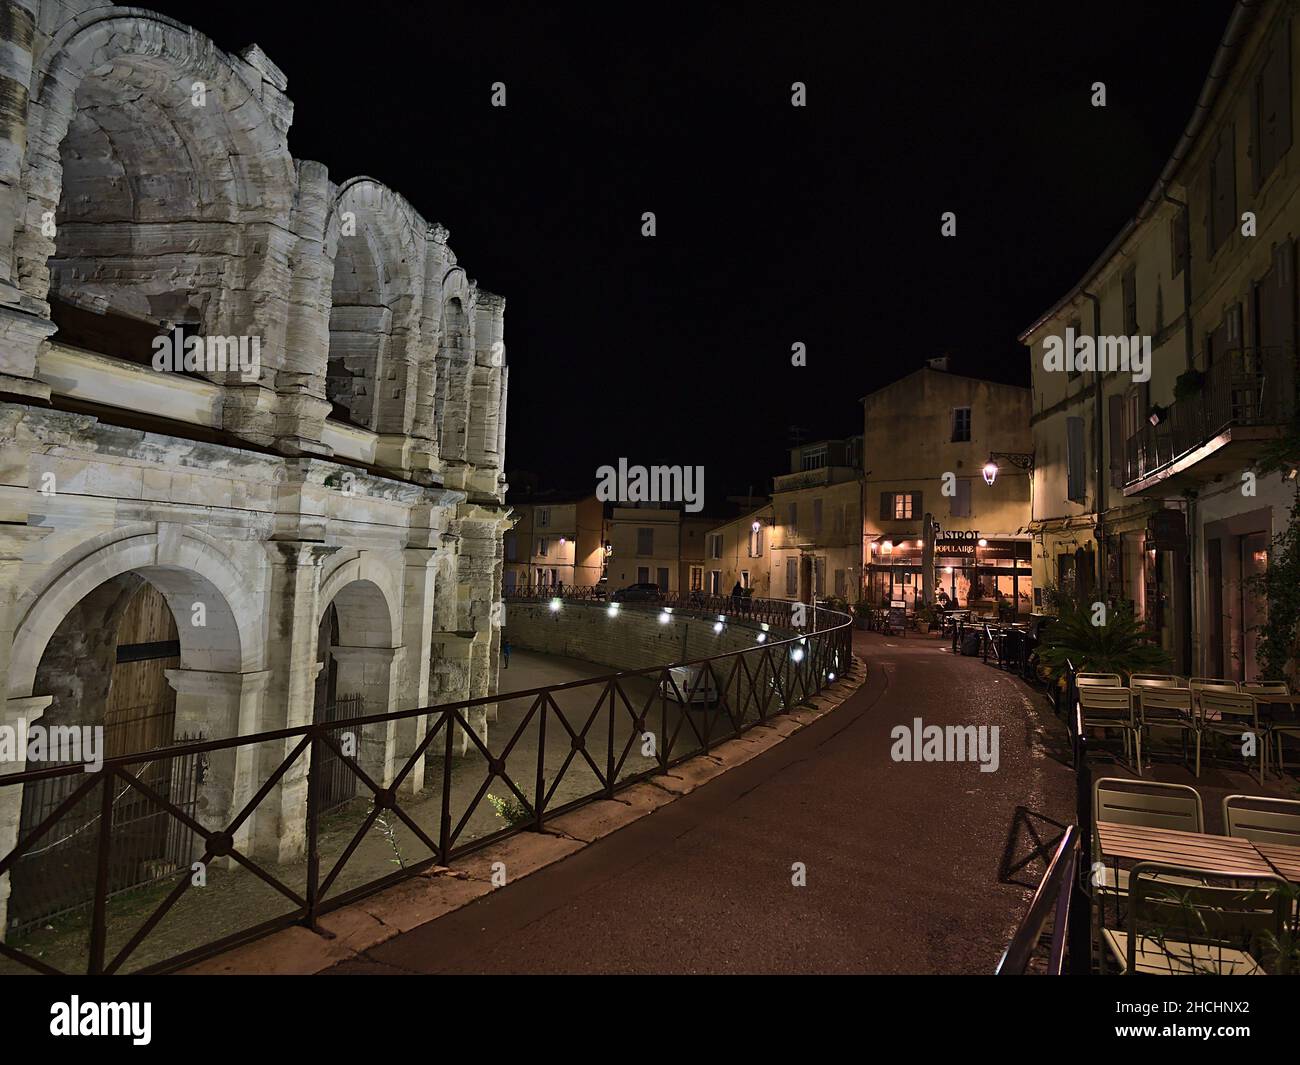 Bella vista notturna del centro storico di Arles, Provenza, Francia in serata con anfiteatro romano illuminato e ristoranti. Foto Stock